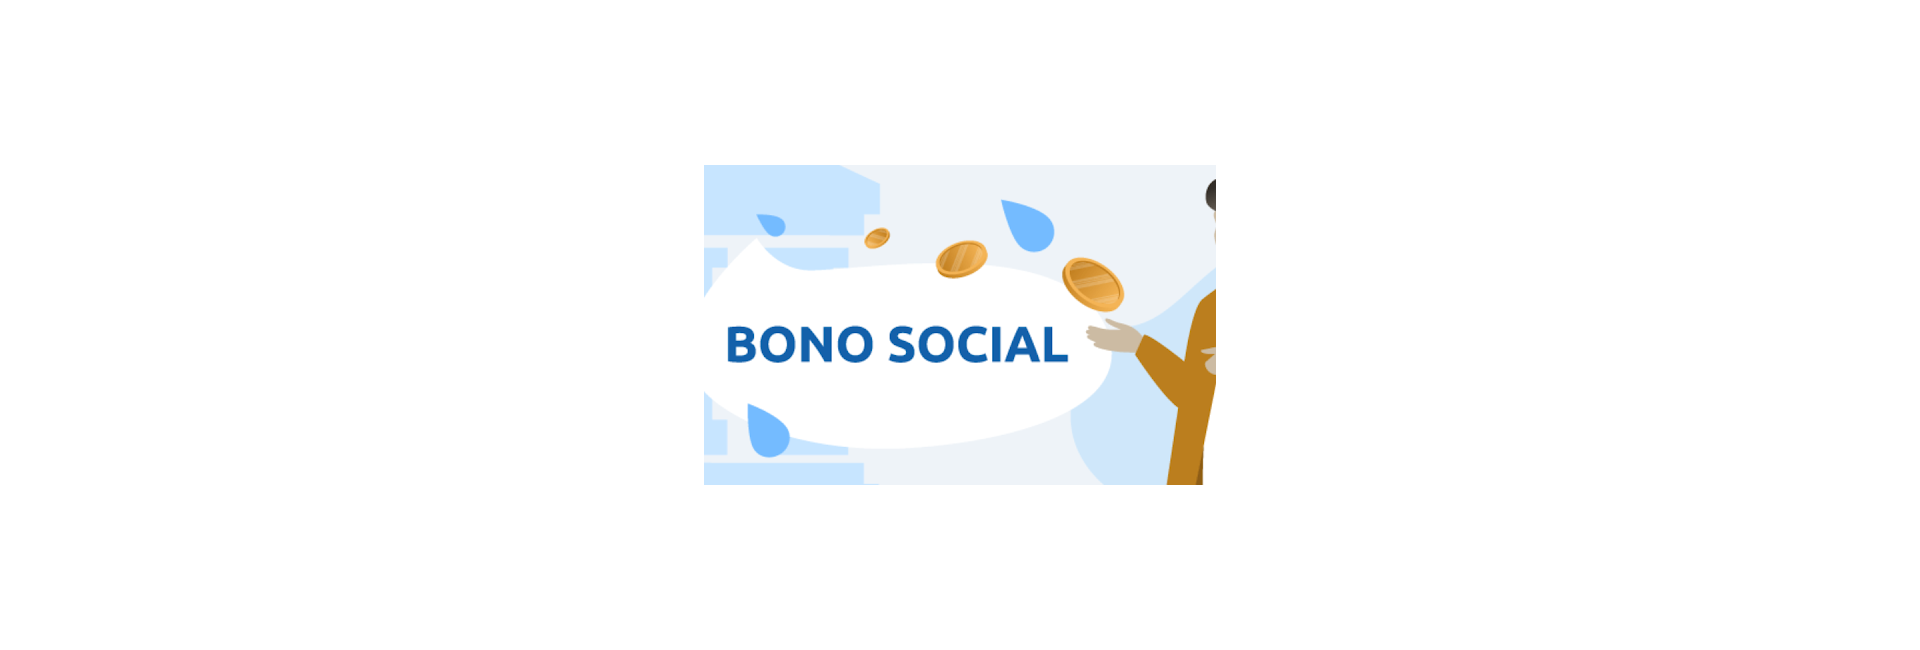 Bono Social 2021